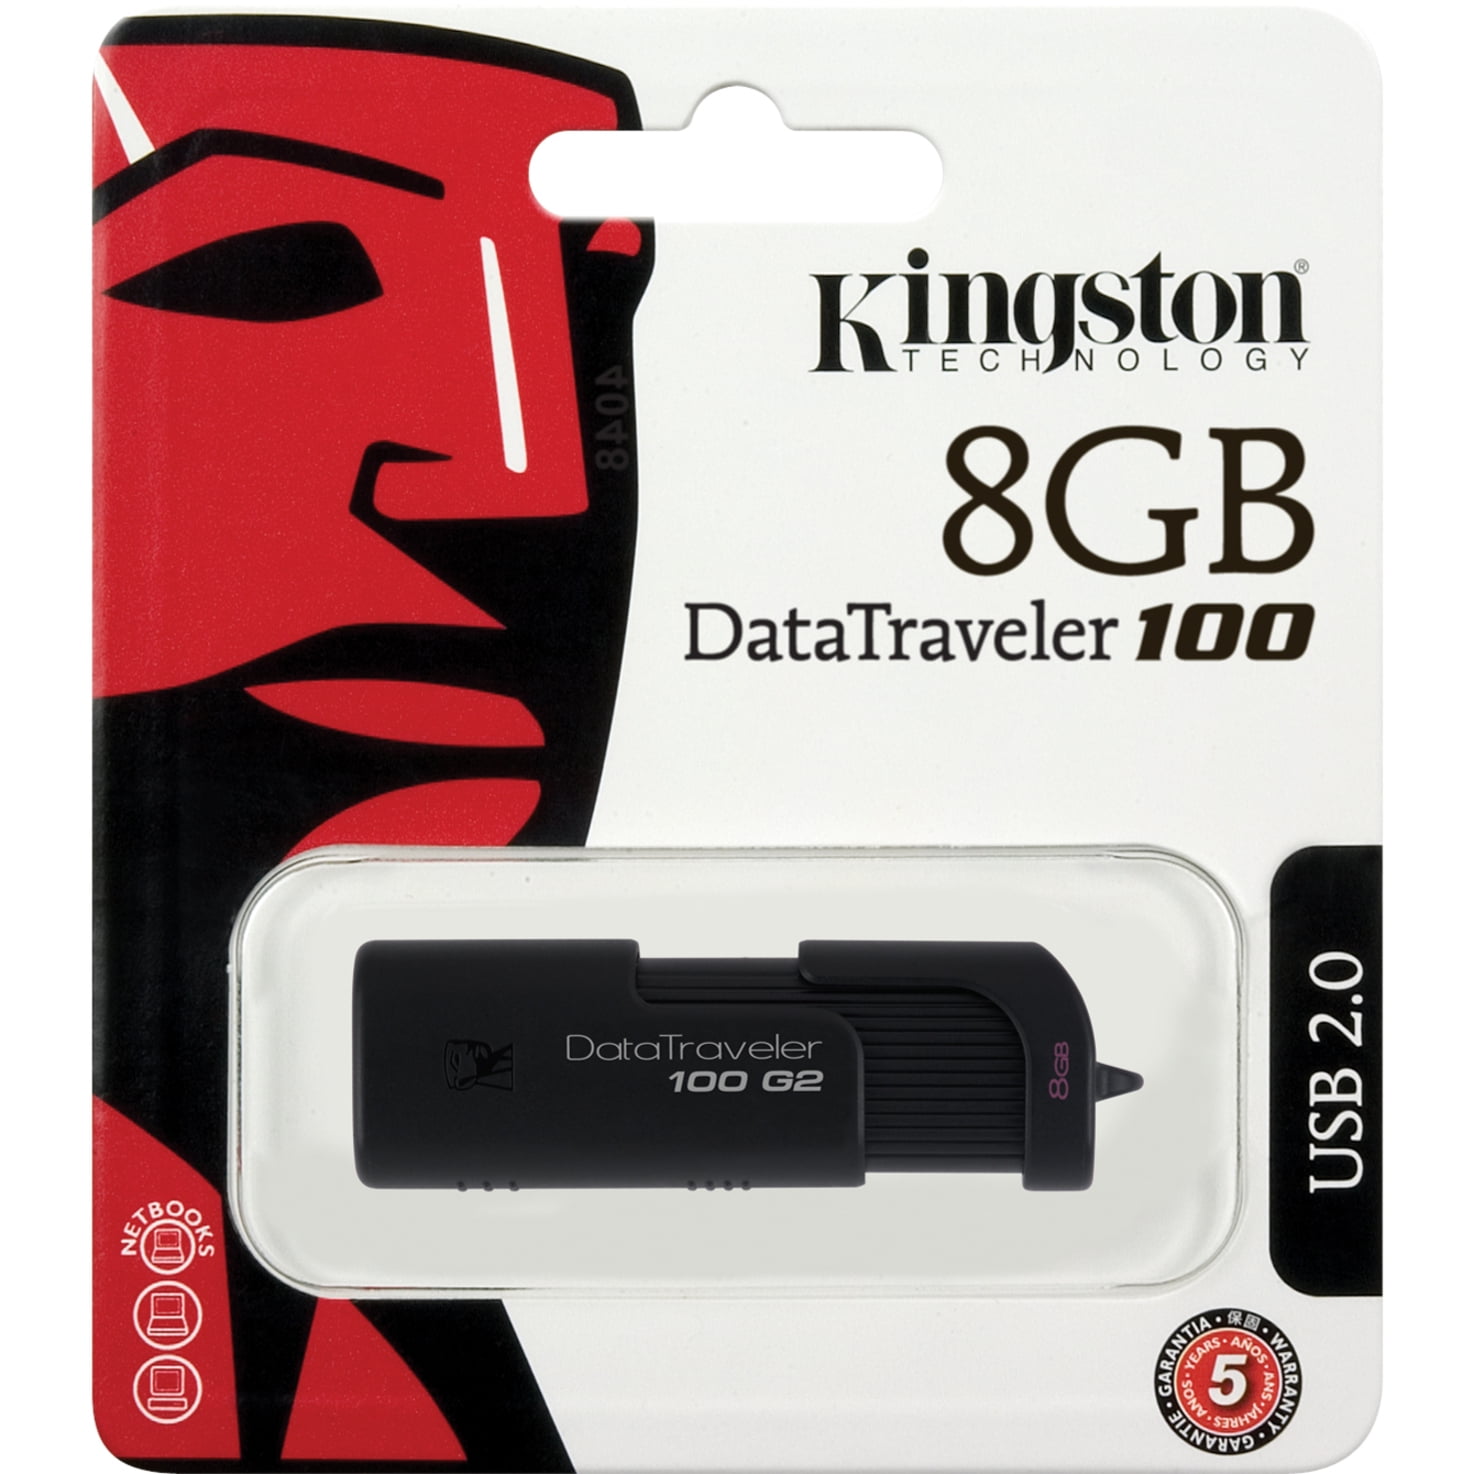 Kingston 8GB DataTraveler DT100G2/8GBZ USB Flash Drive Walmart.com